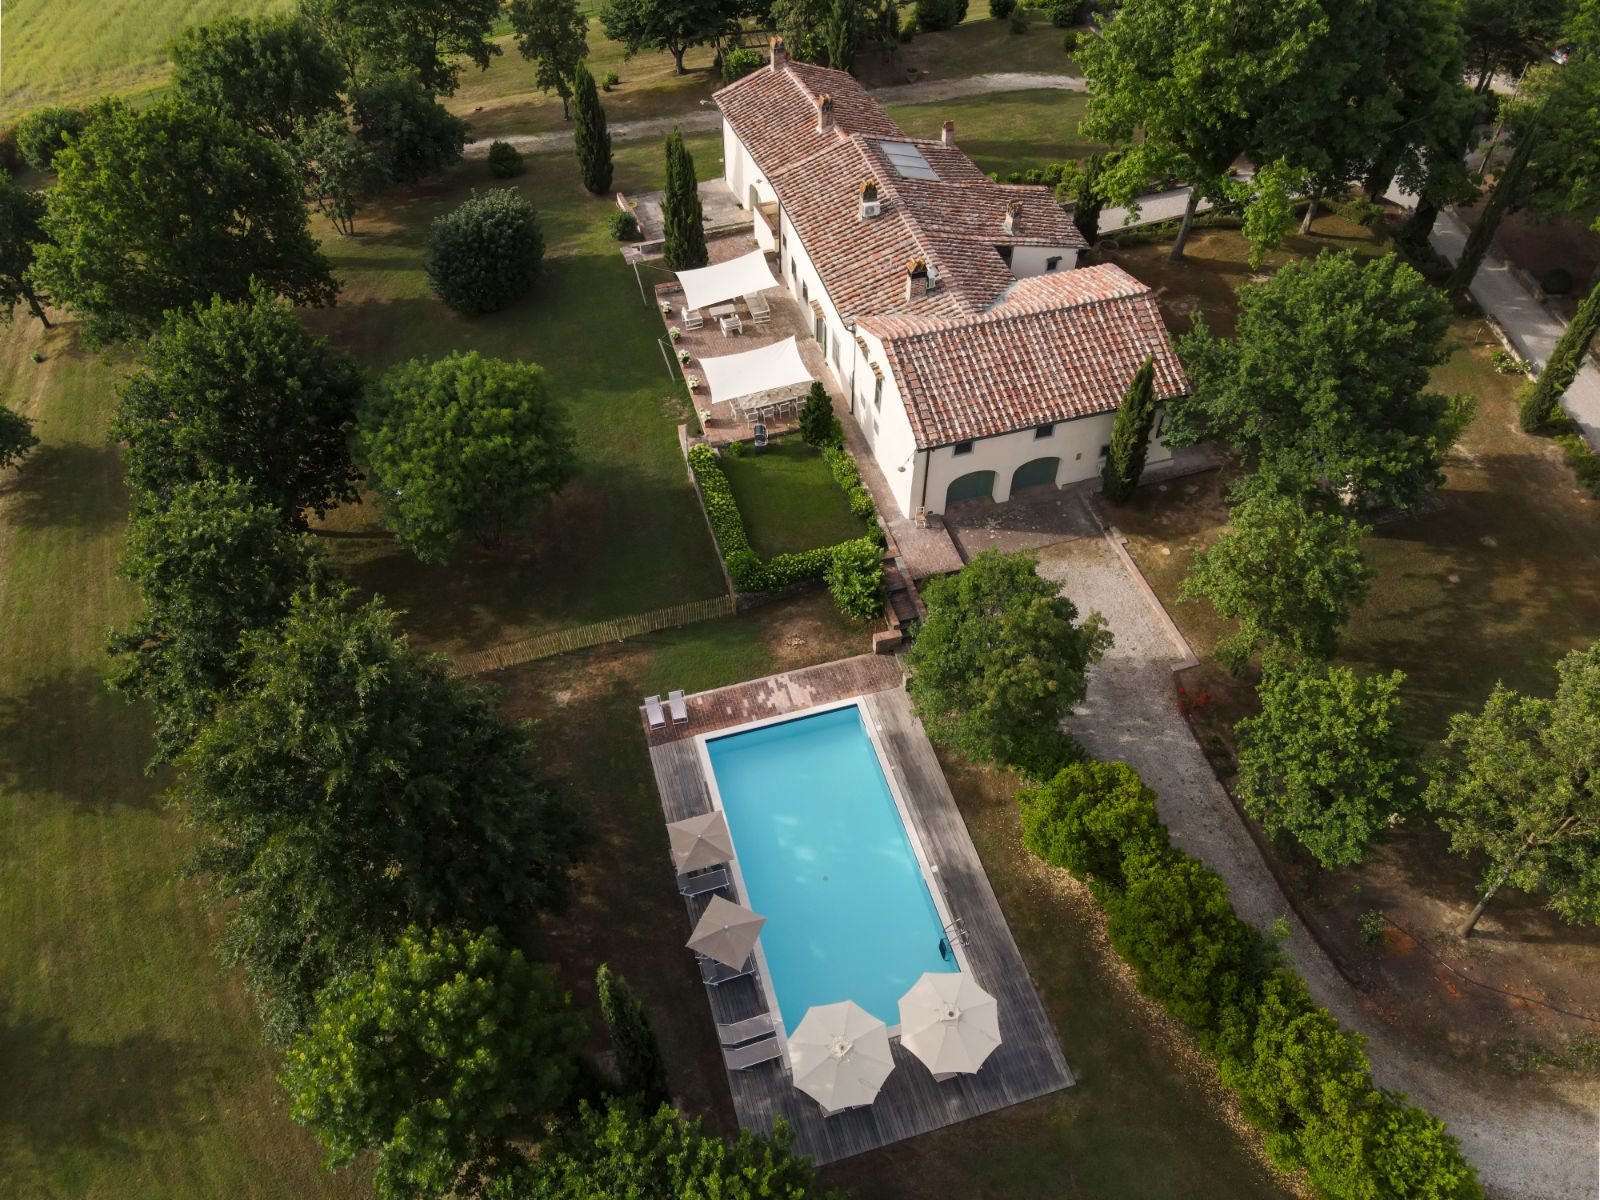 Ariel View of Villa Tuori in Tuscany